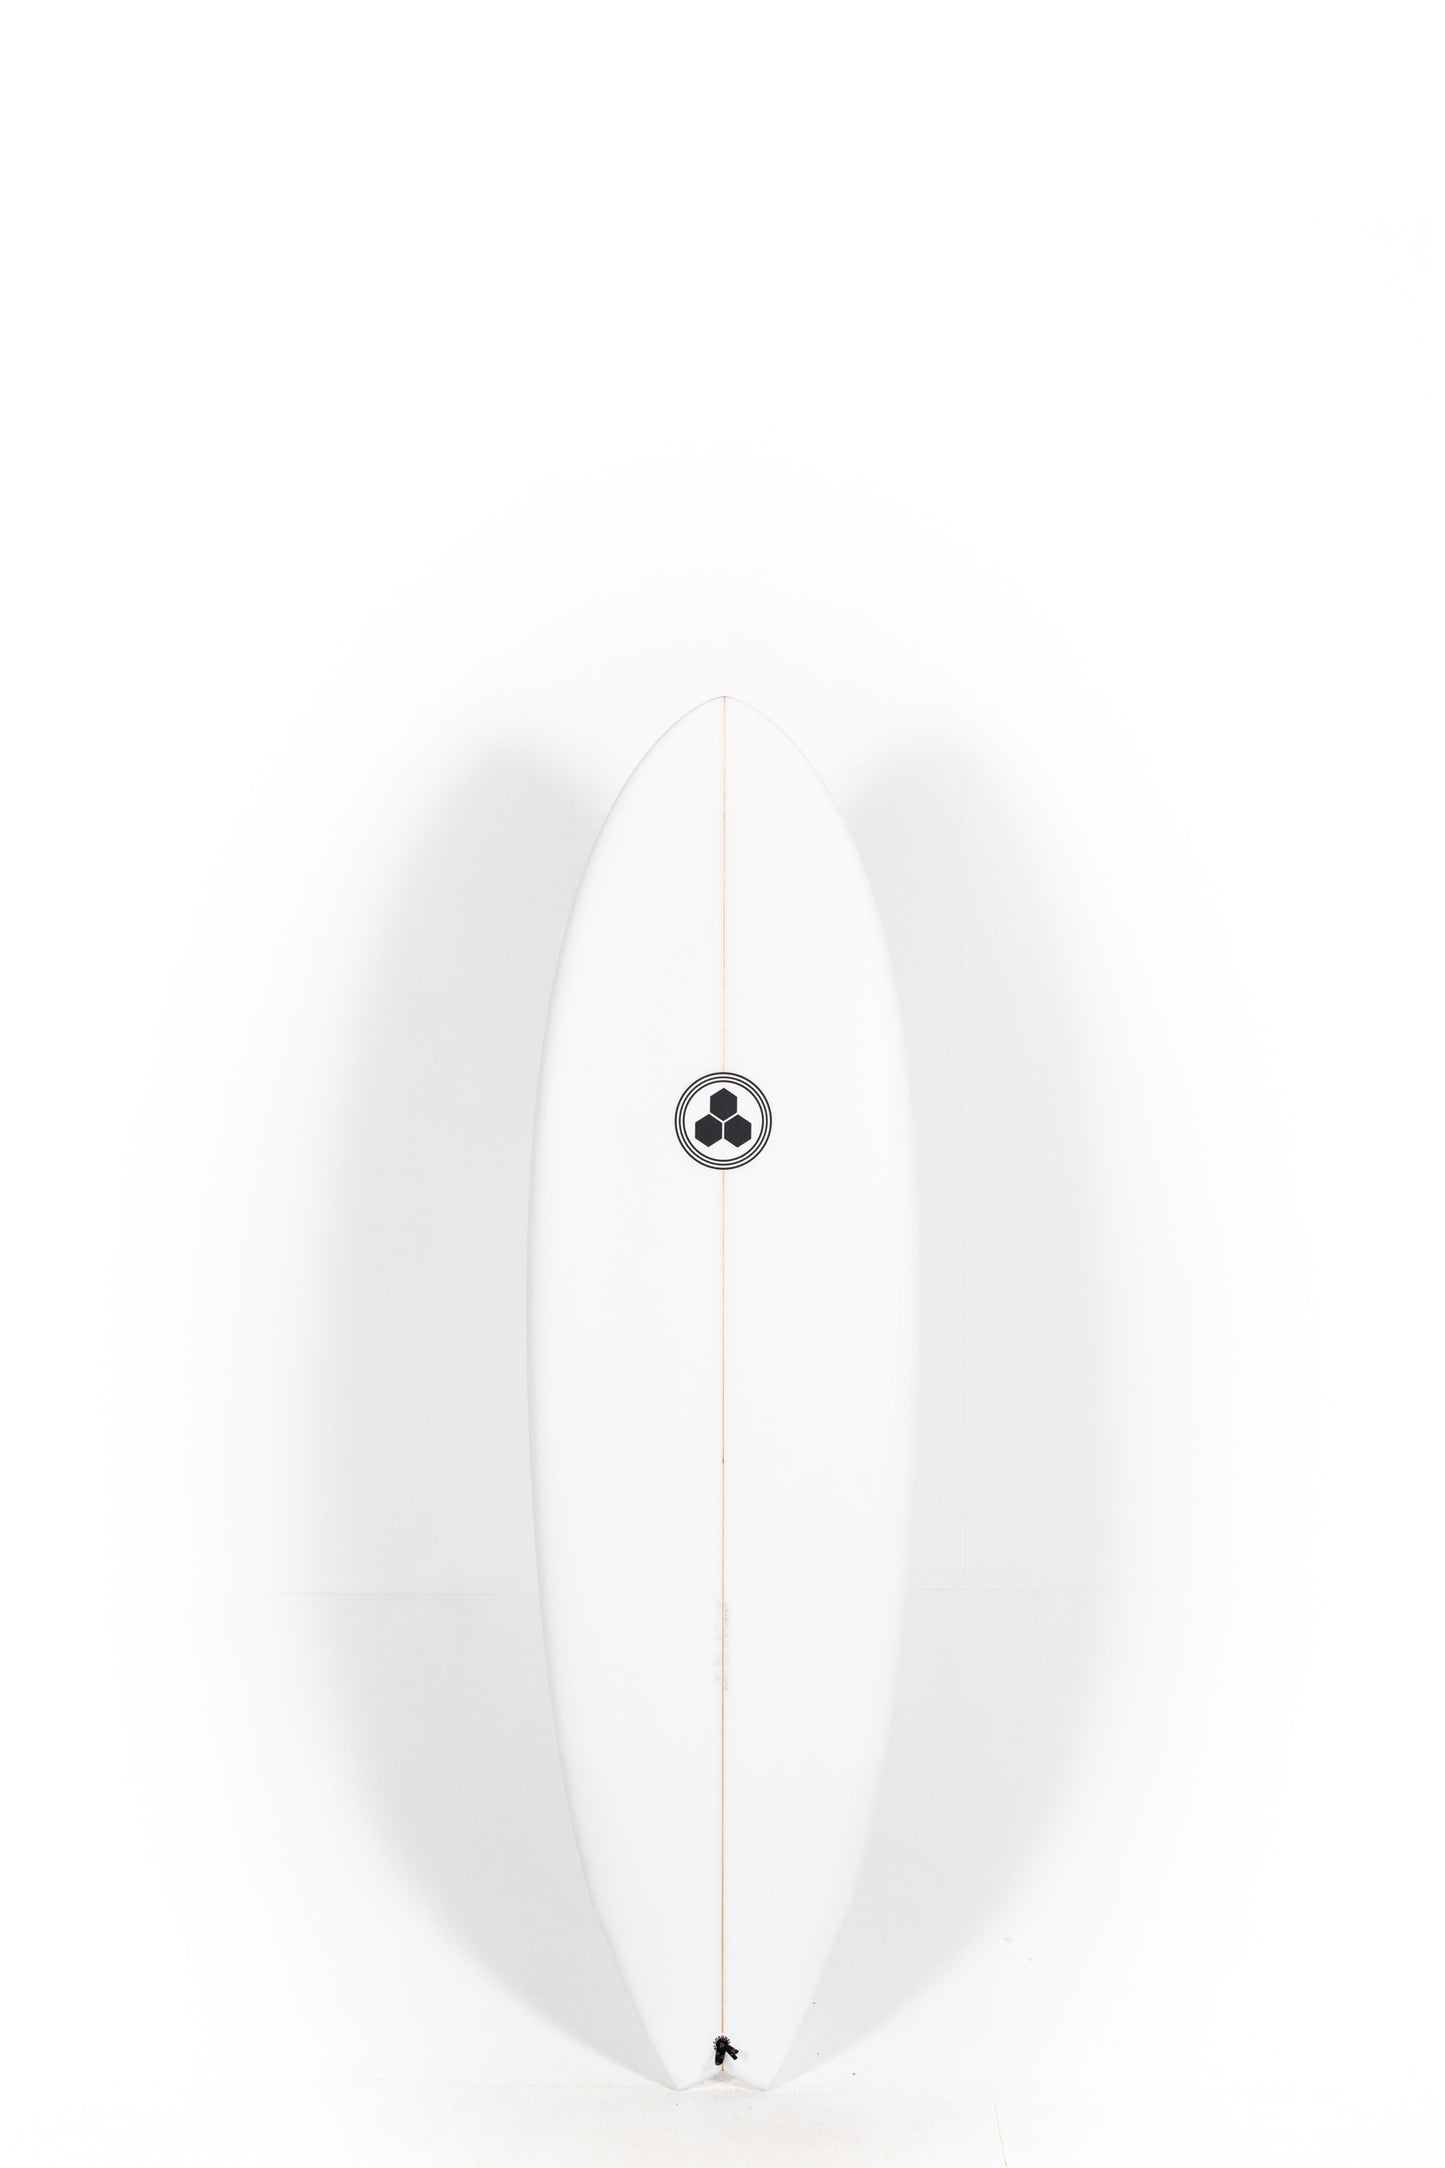 Pukas Surf Shop - Channel Islands - G-Skate by Al Merrick - 6'0" x 20 1/2 x 2 3/4 - 38L - CI26683